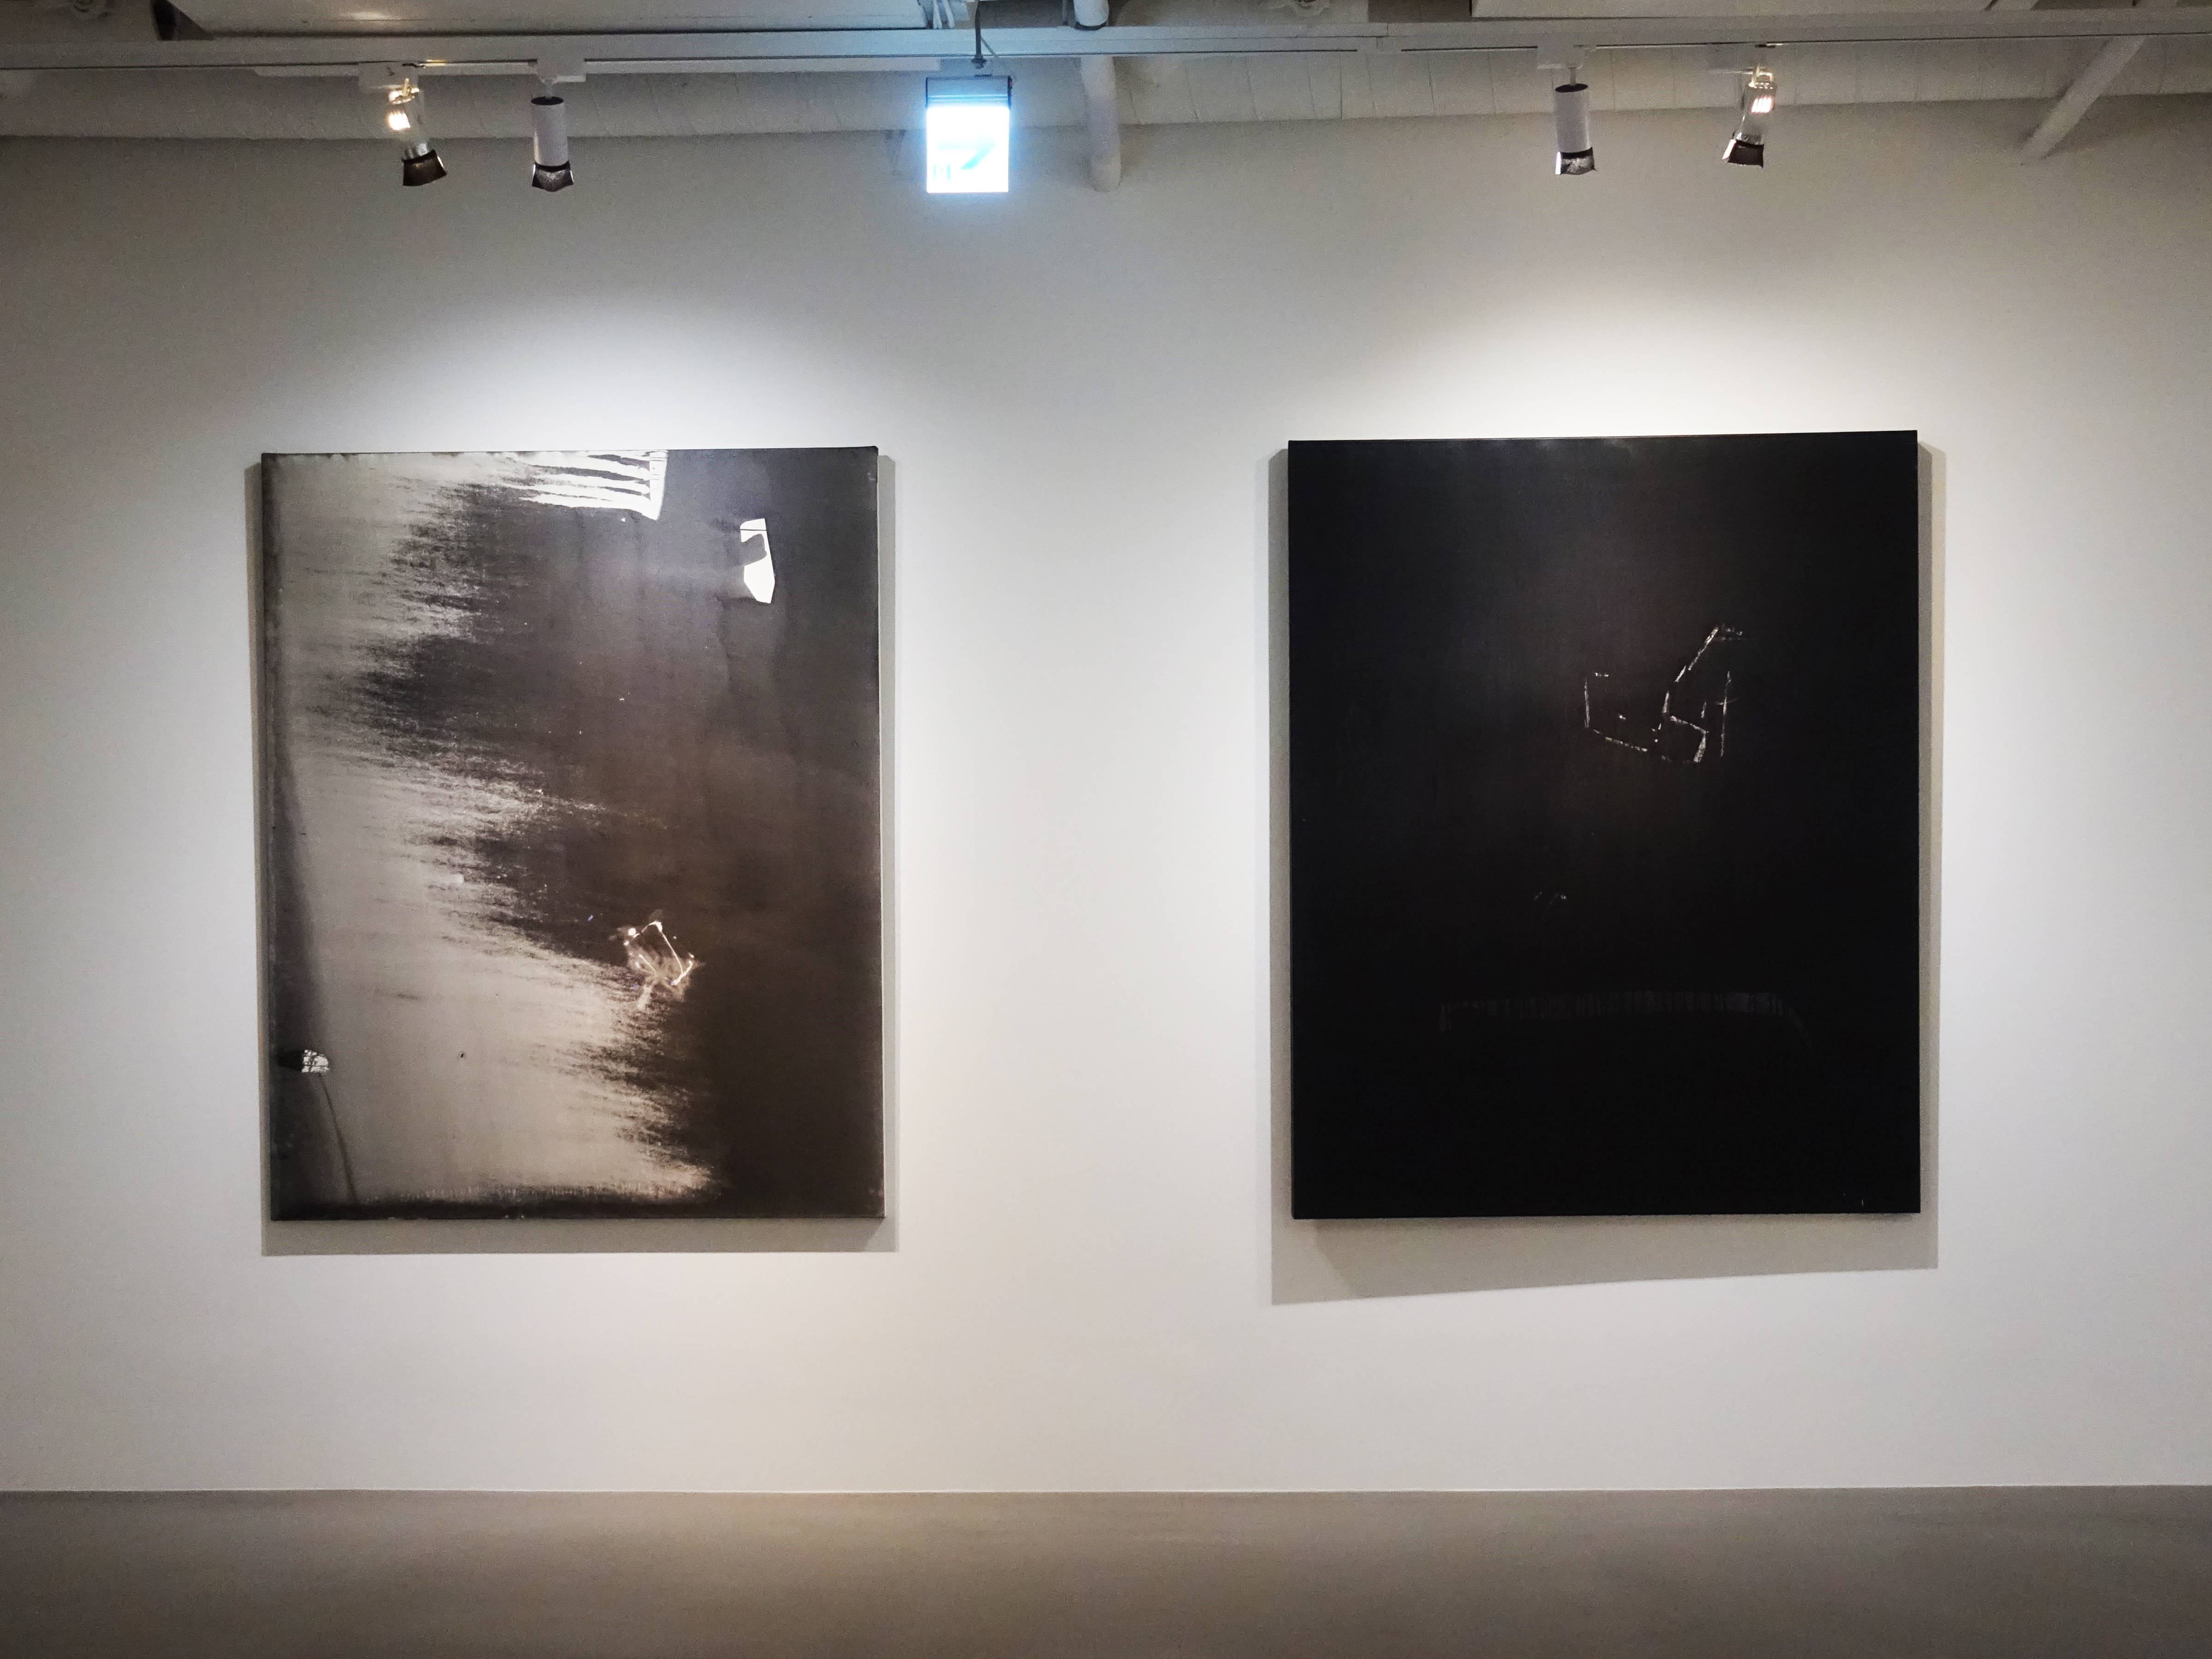 林鴻文，《如斯之境》，162 x 130 cm，壓克力顏料、畫布，2019(左)。林鴻文，《相遇》，162 x 130 cm，壓克力顏料、畫布，2016(右)。 